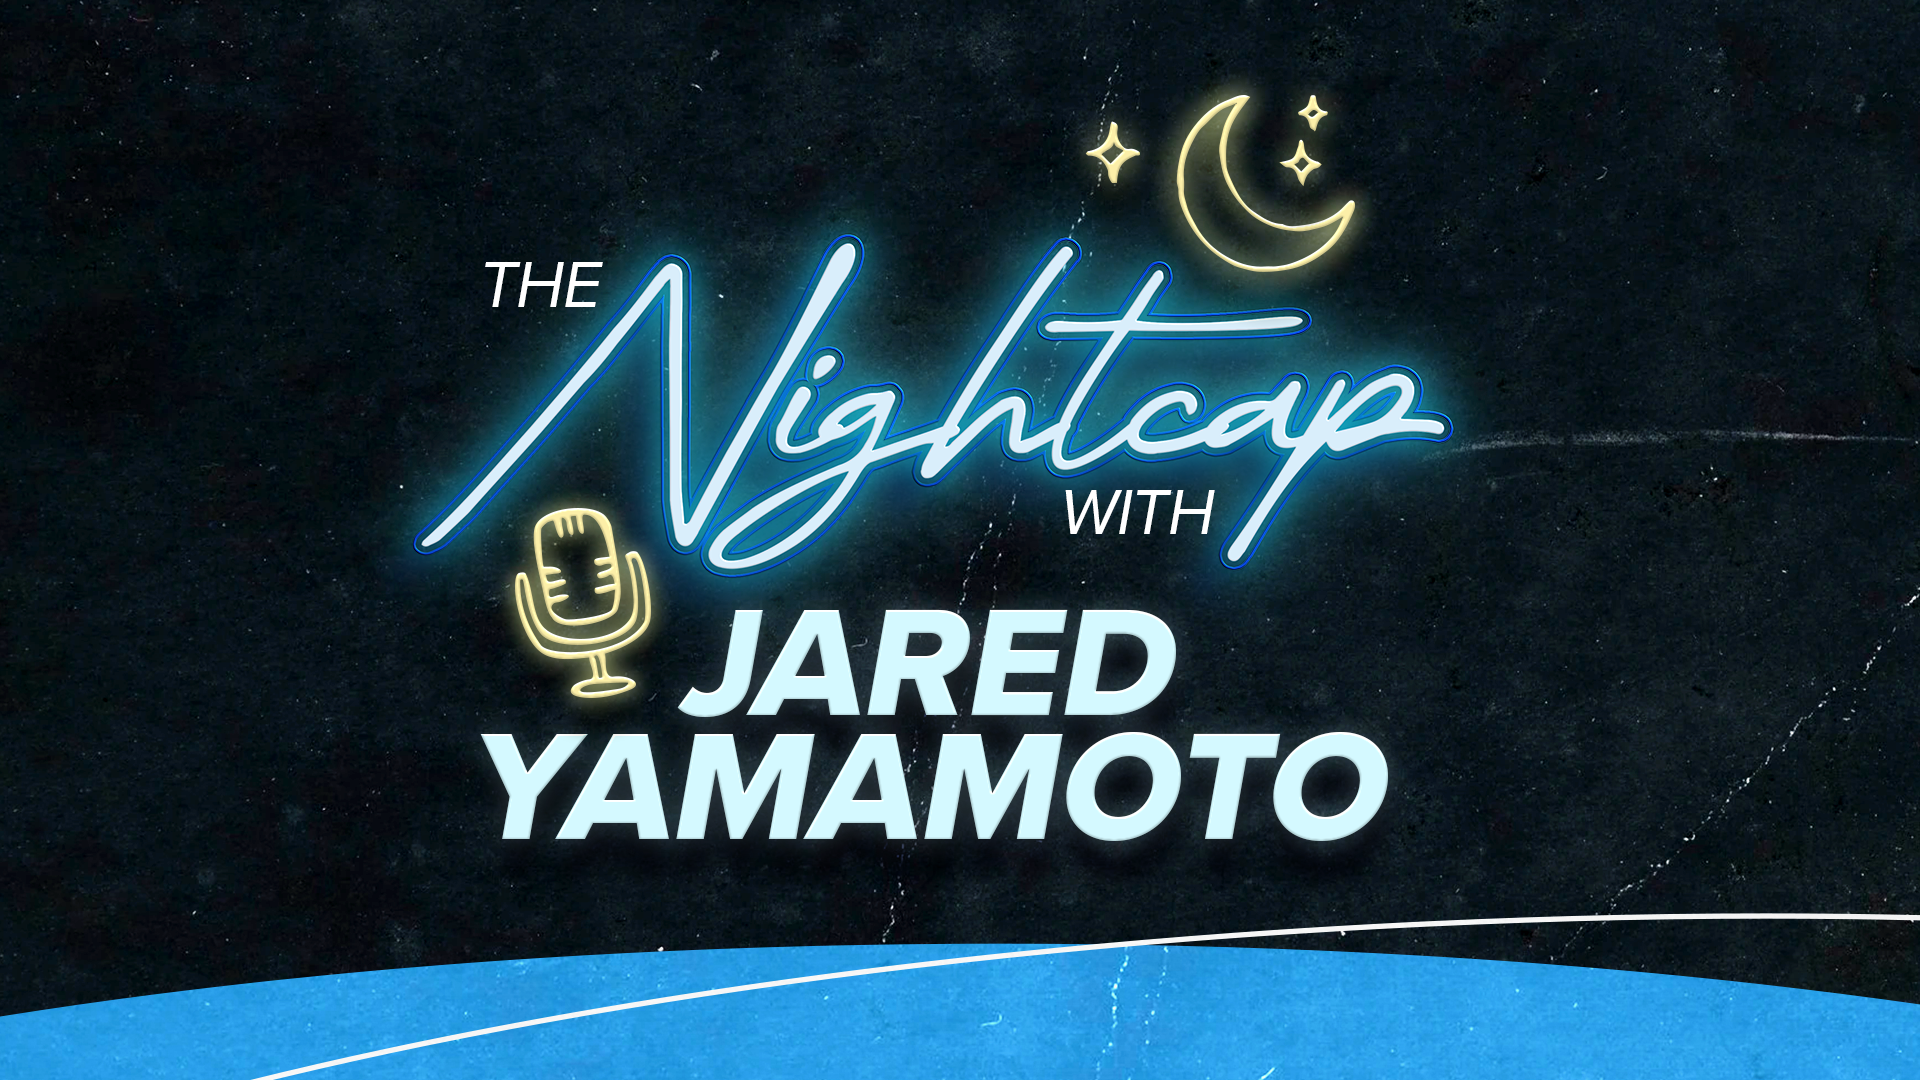 The Nightcap with Jared Yamamoto